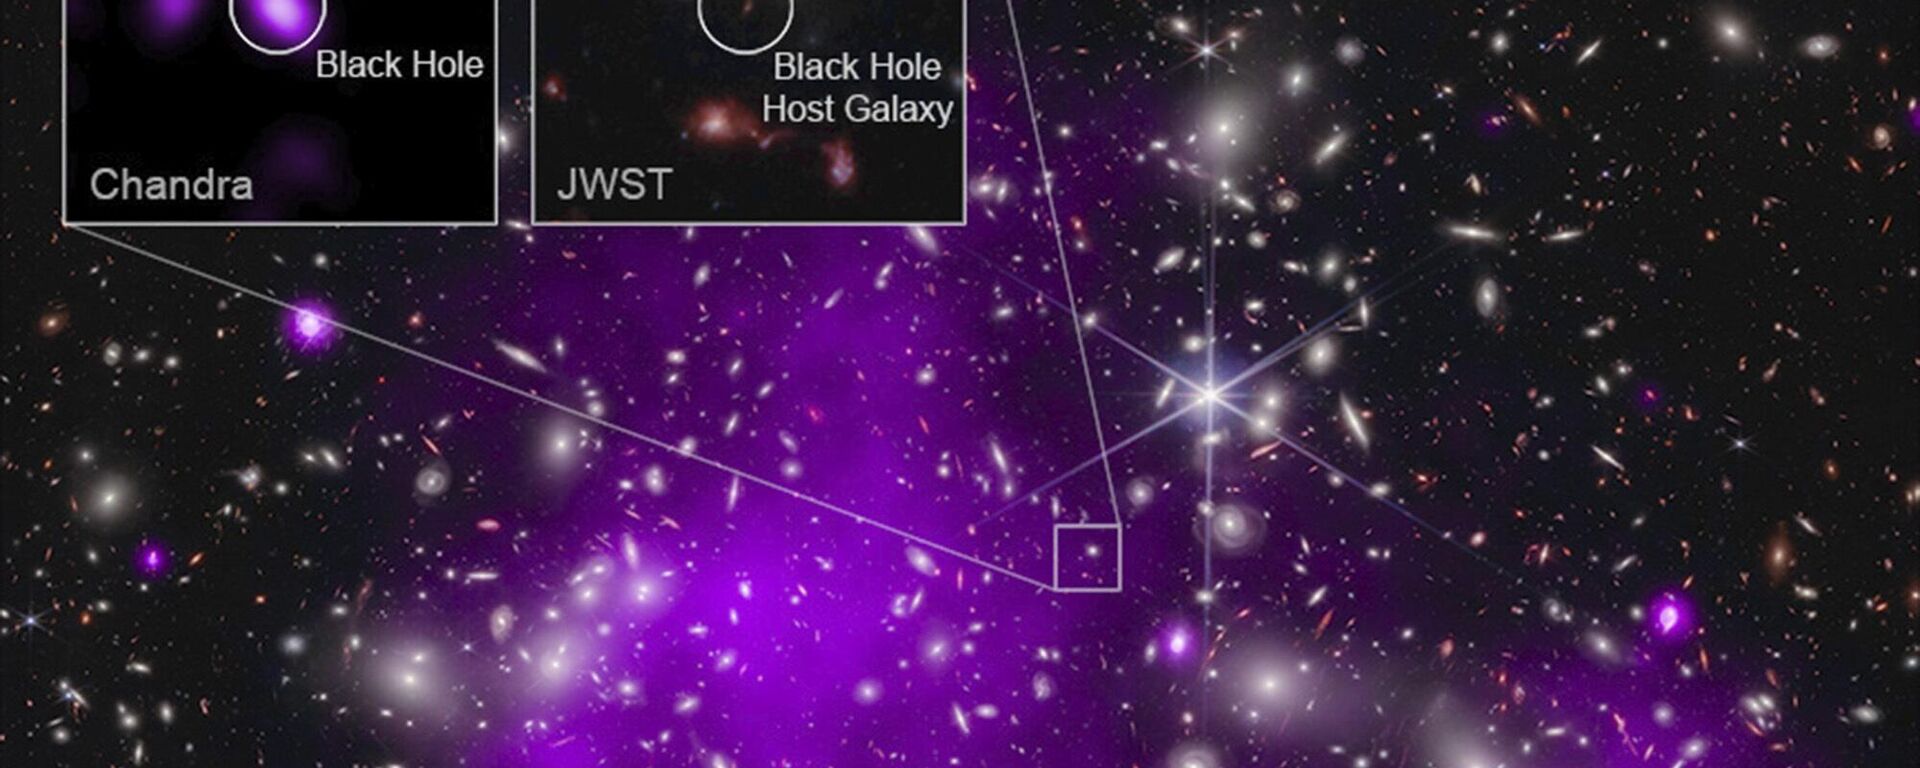 Esta imagen con anotaciones proporcionada por la NASA el lunes 6 de noviembre de 2023, muestra datos del Observatorio de Rayos X Chandra de la NASA y del Telescopio James Webb que indica un agujero negro en crecimiento tan solo 470 millones de años después del big bang. Se trata del agujero negro más antiguo descubierto hasta la fecha. - Sputnik Mundo, 1920, 07.11.2023